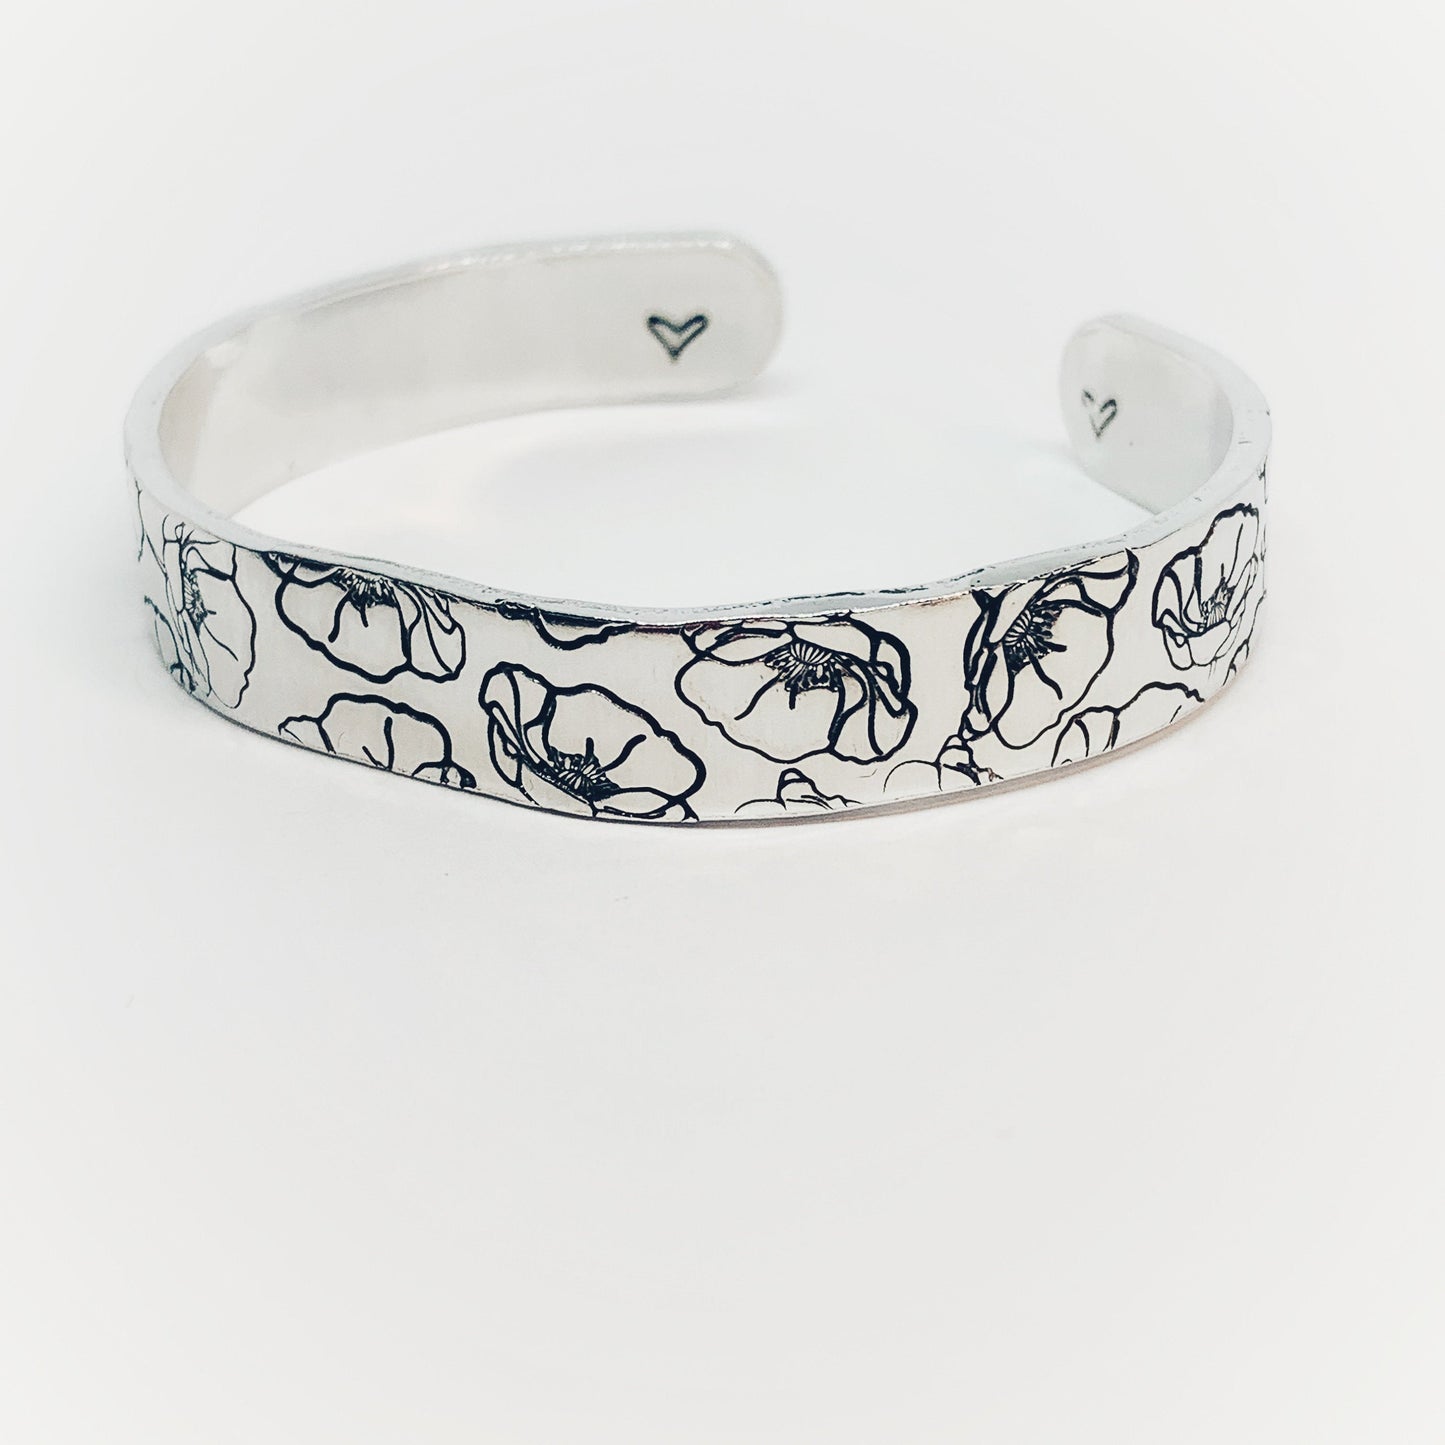 Poppies - Hand Stamped Cuff Bracelet